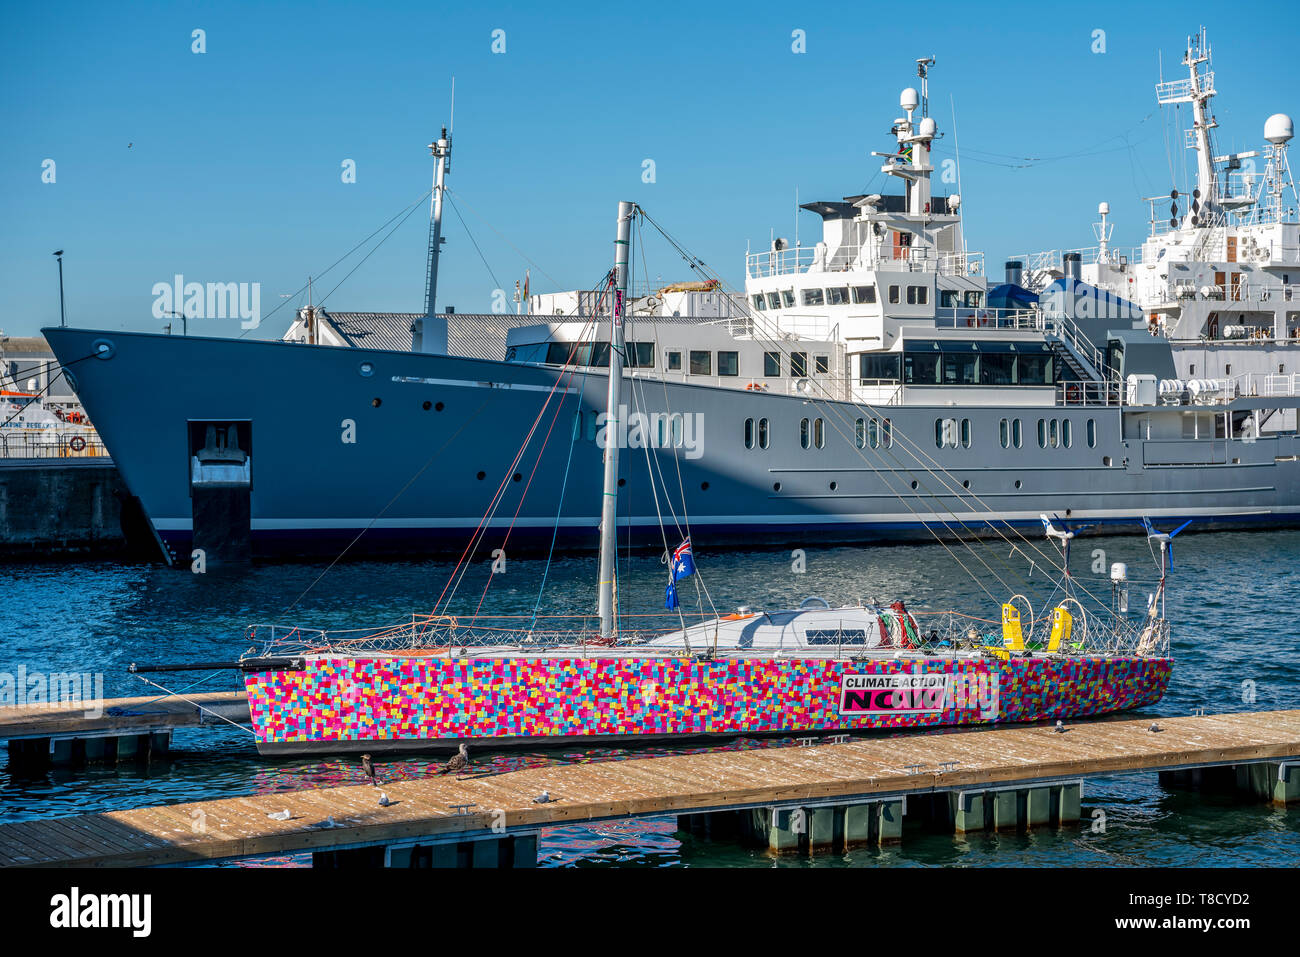 L'action climatique yacht maintenant en plus grand parmi les navires de mer fairing Banque D'Images